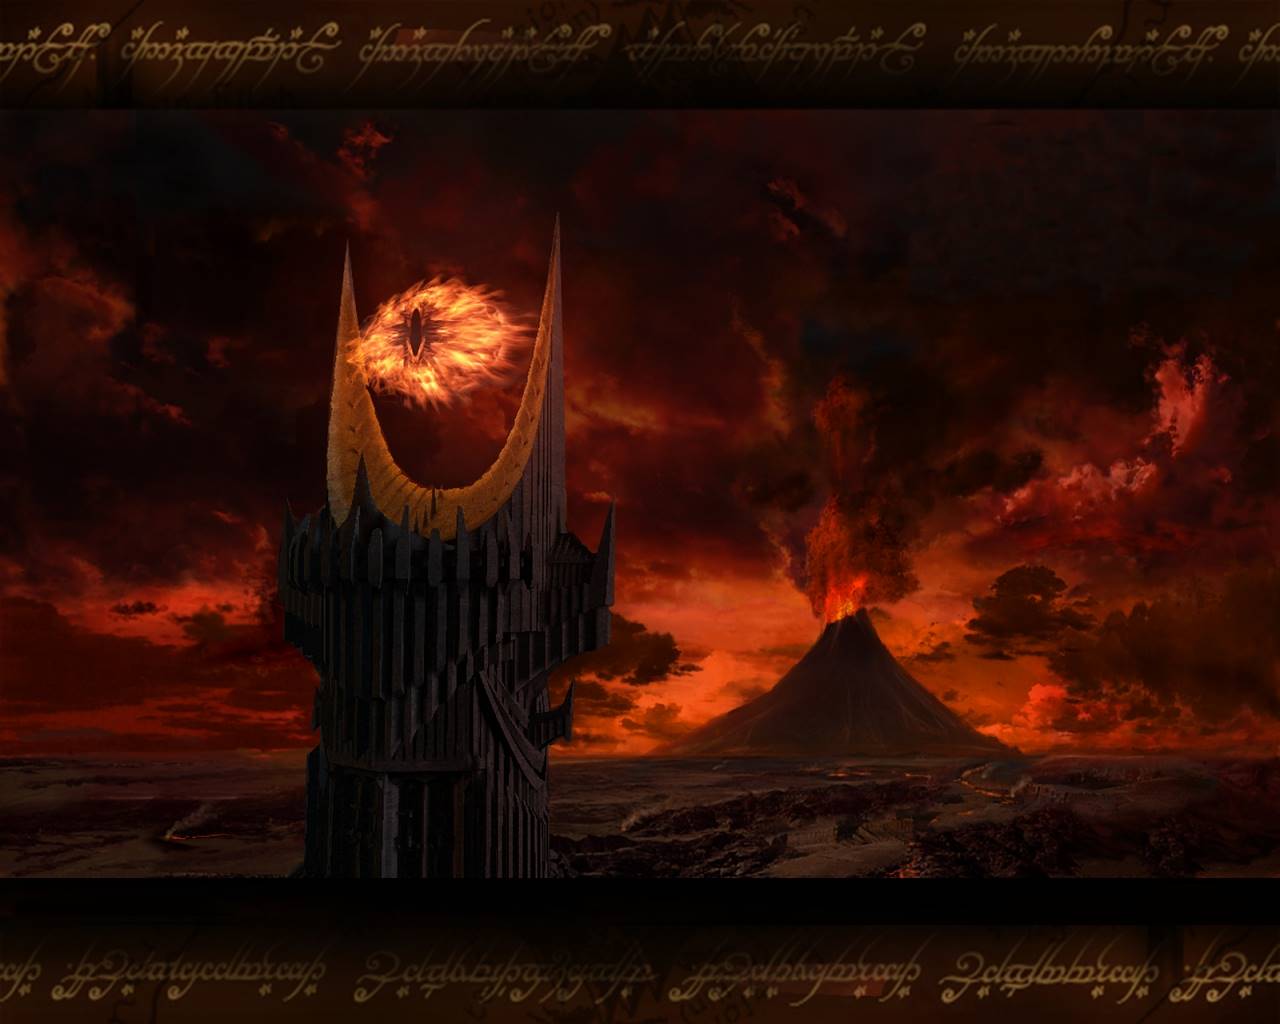 Mt Doom, obok której znajdowała się wieża z okiem Saurona